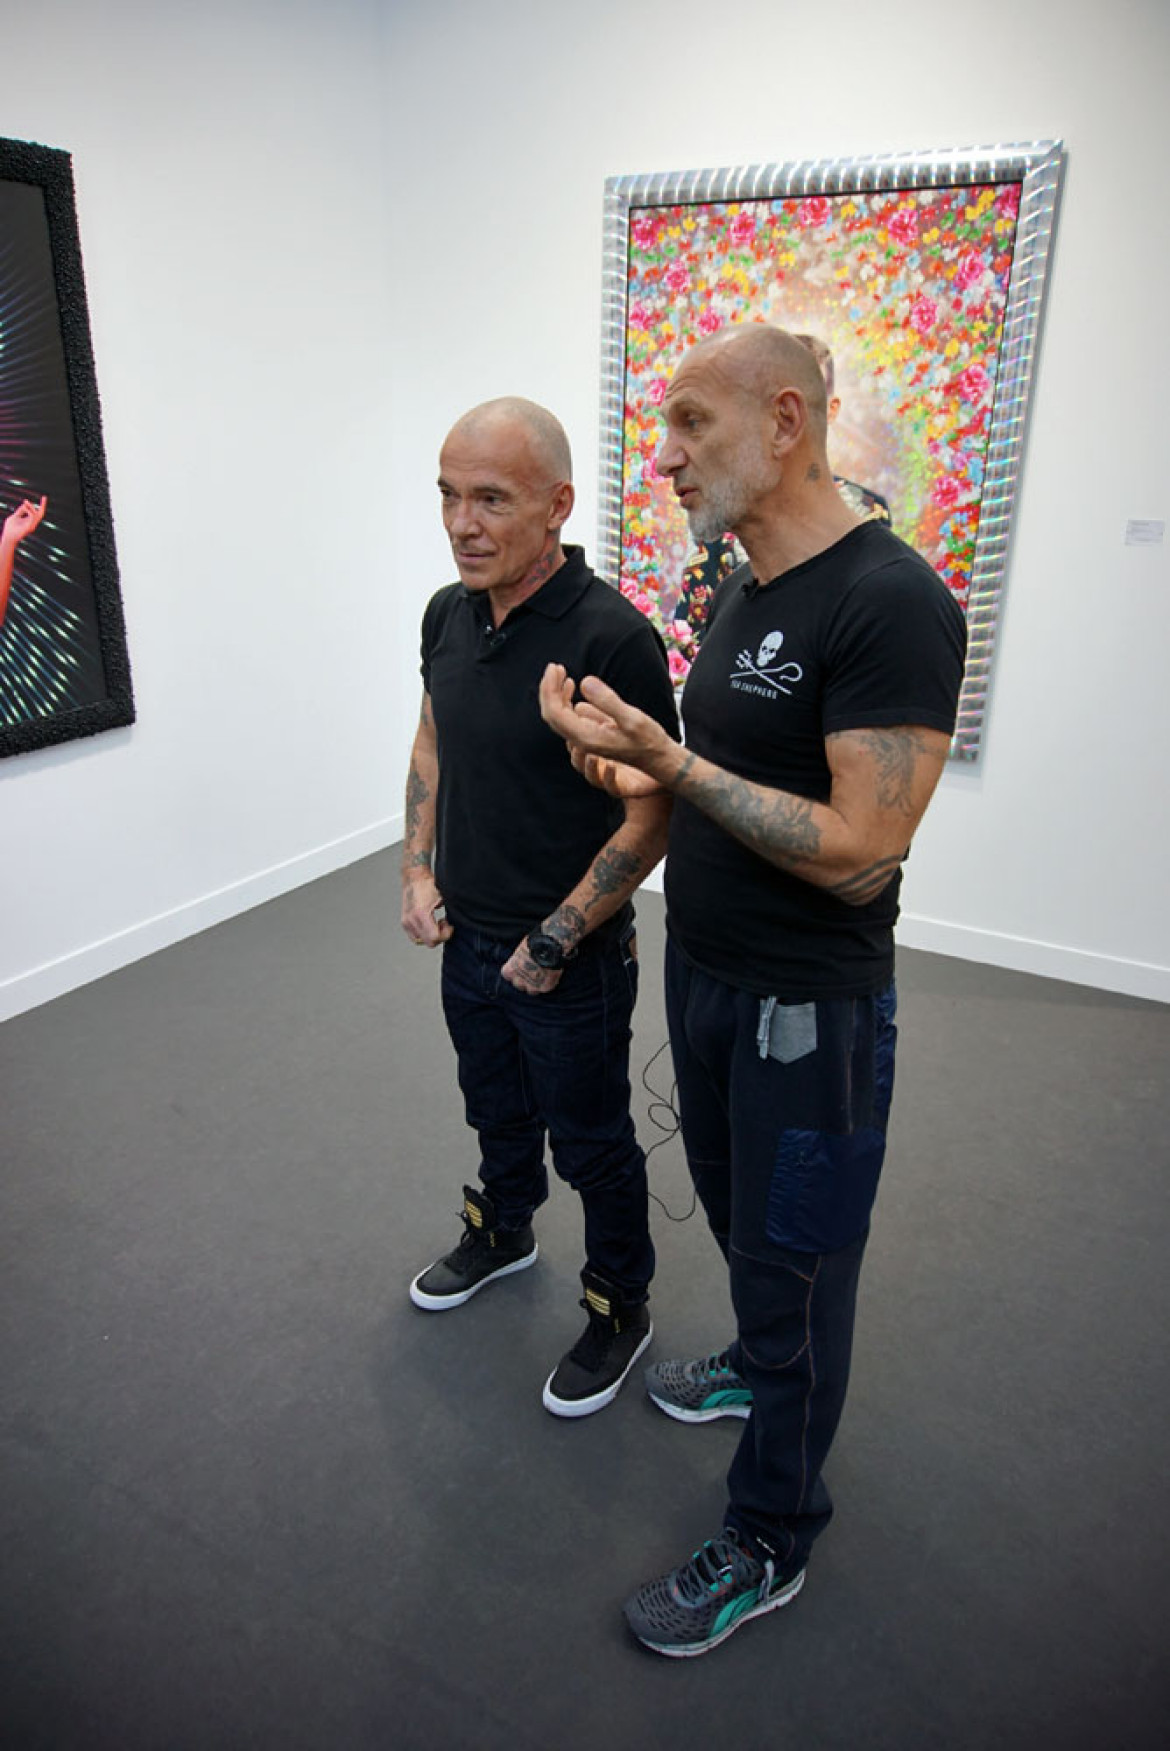 Pierre i Gilles opowiadają o swoich pracach, Galerie Daniel Templon